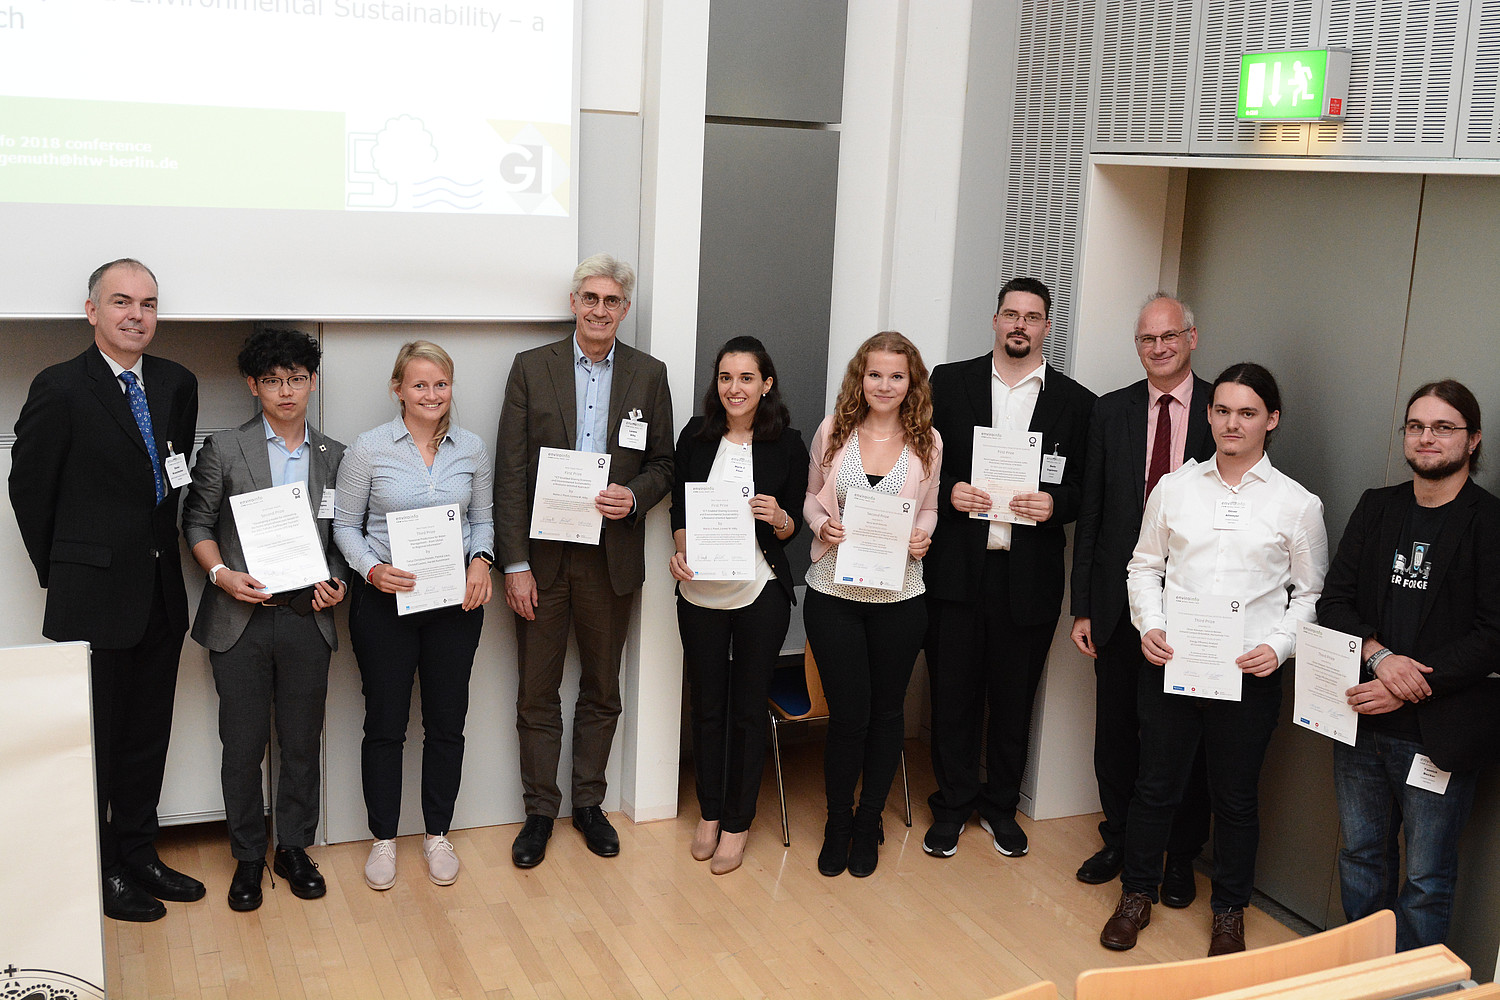 Die Preistäger*innen mit Laudatoren und Sponsor: (v.l.n.r.) Prof. Dr. Dieter Kranzlmüller, Co-Chair der EnviroInfo 2018, Yoshiki Ogawa (2. Best Paper Award), Tanja Christina Portele (3. Best Paper Award), Prof. Dr. Lorenz Hilty, Maria J. Pouri (1. Best Paper Award), Maria Sarah Wersche (2. Student`s Prize), Martin Engelmann (1. Student`s Prize), Prof. Dr. Volker Wohlgemuth, Martin Oliver Allweyer und Yannick Becker (3. Student`s Prize).